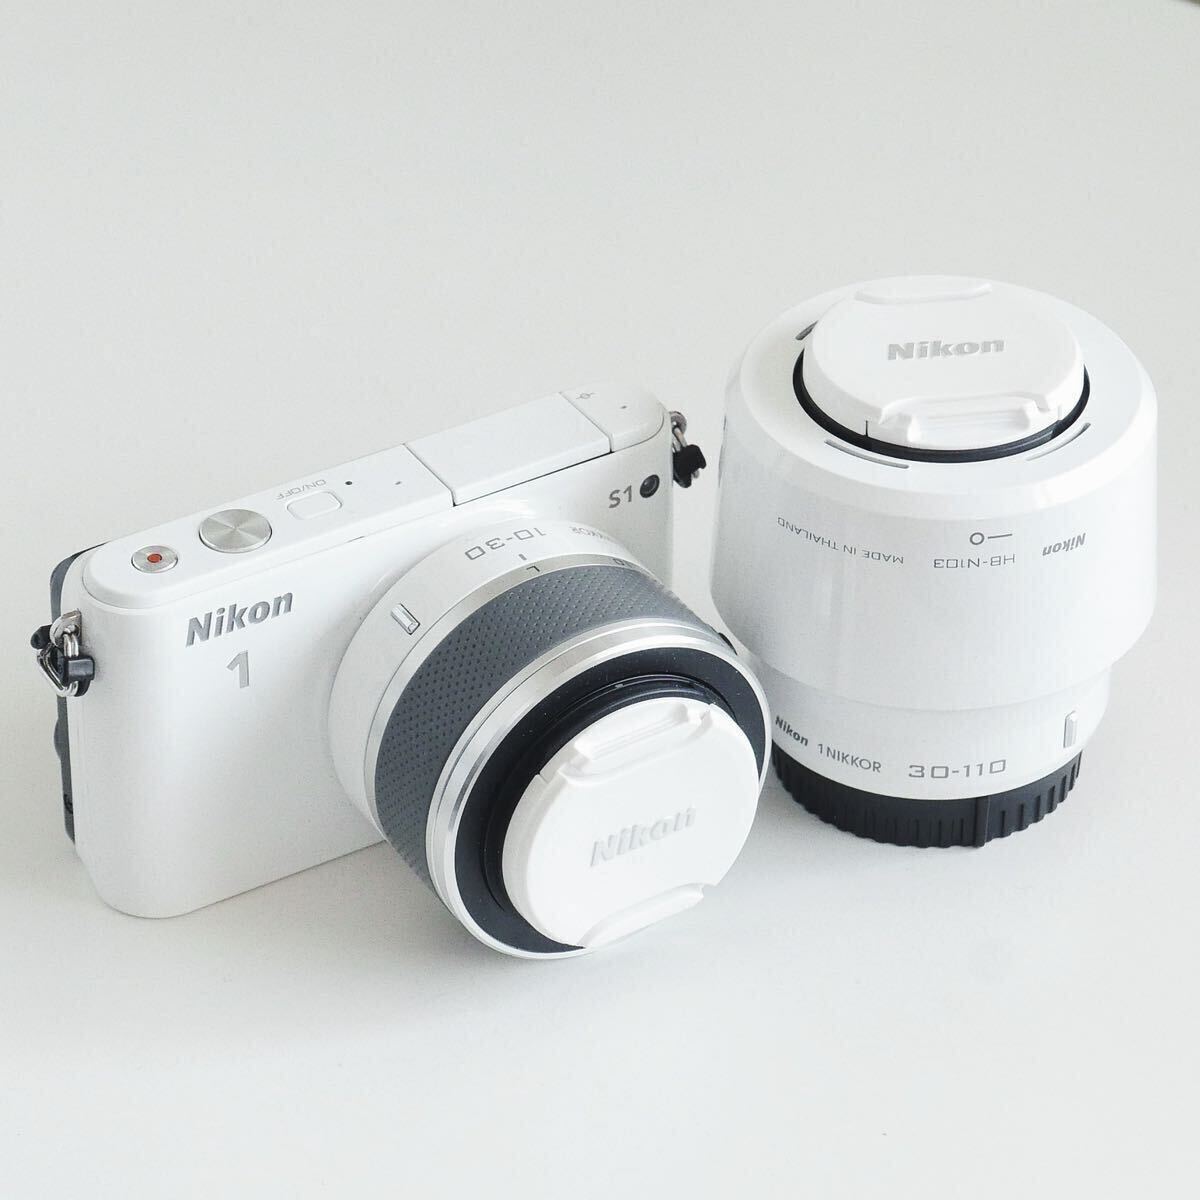 〈即決〉 Nikon 1 ニコン S1 ボディ + 10-30mm F3.5-5.6 VR + 30-110mm F3.8-5.6 VR ダブルズーム レンズ セット品の画像1